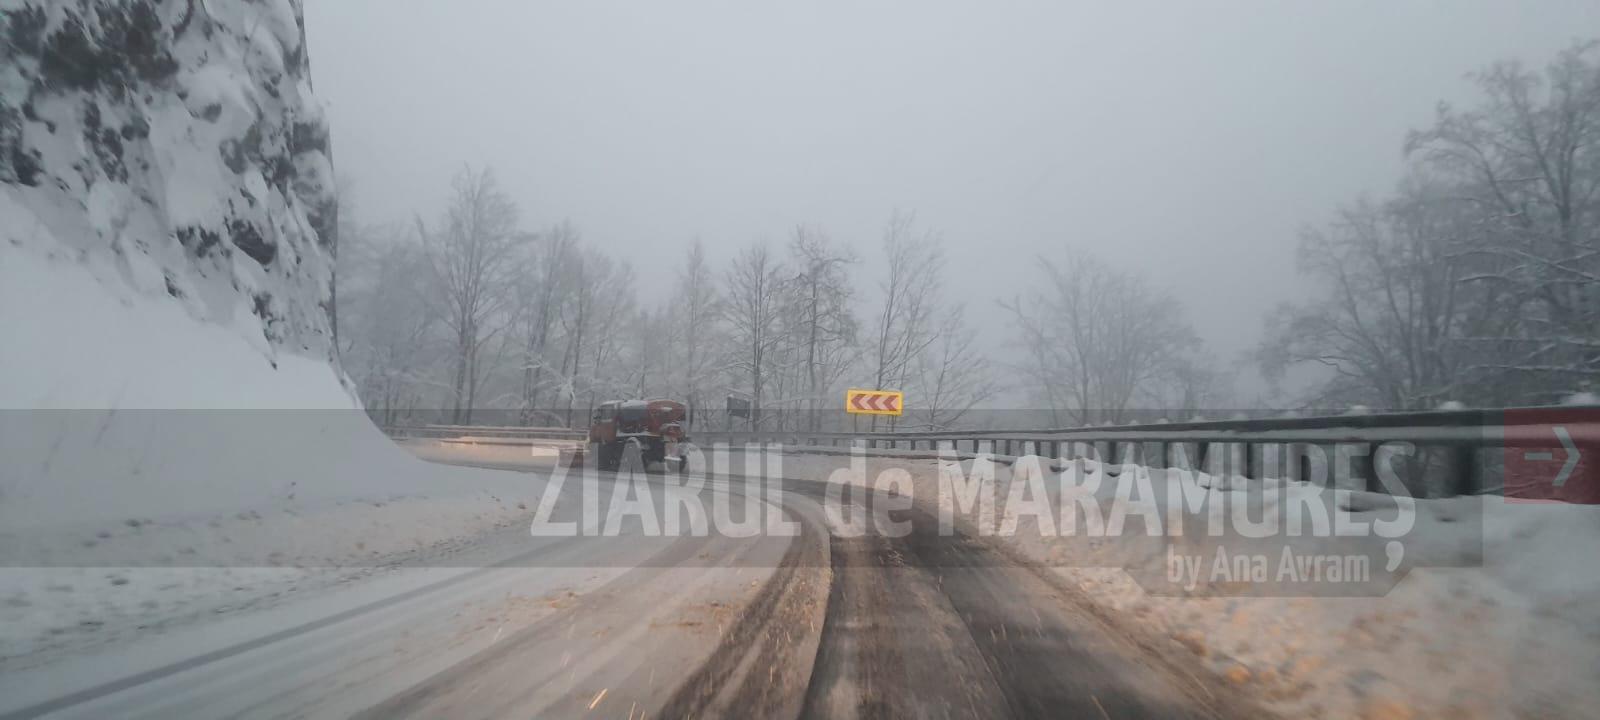 Circulație rutieră în condiții de iarnă. 3 grade C, minima zilei de miercuri în Maramureș